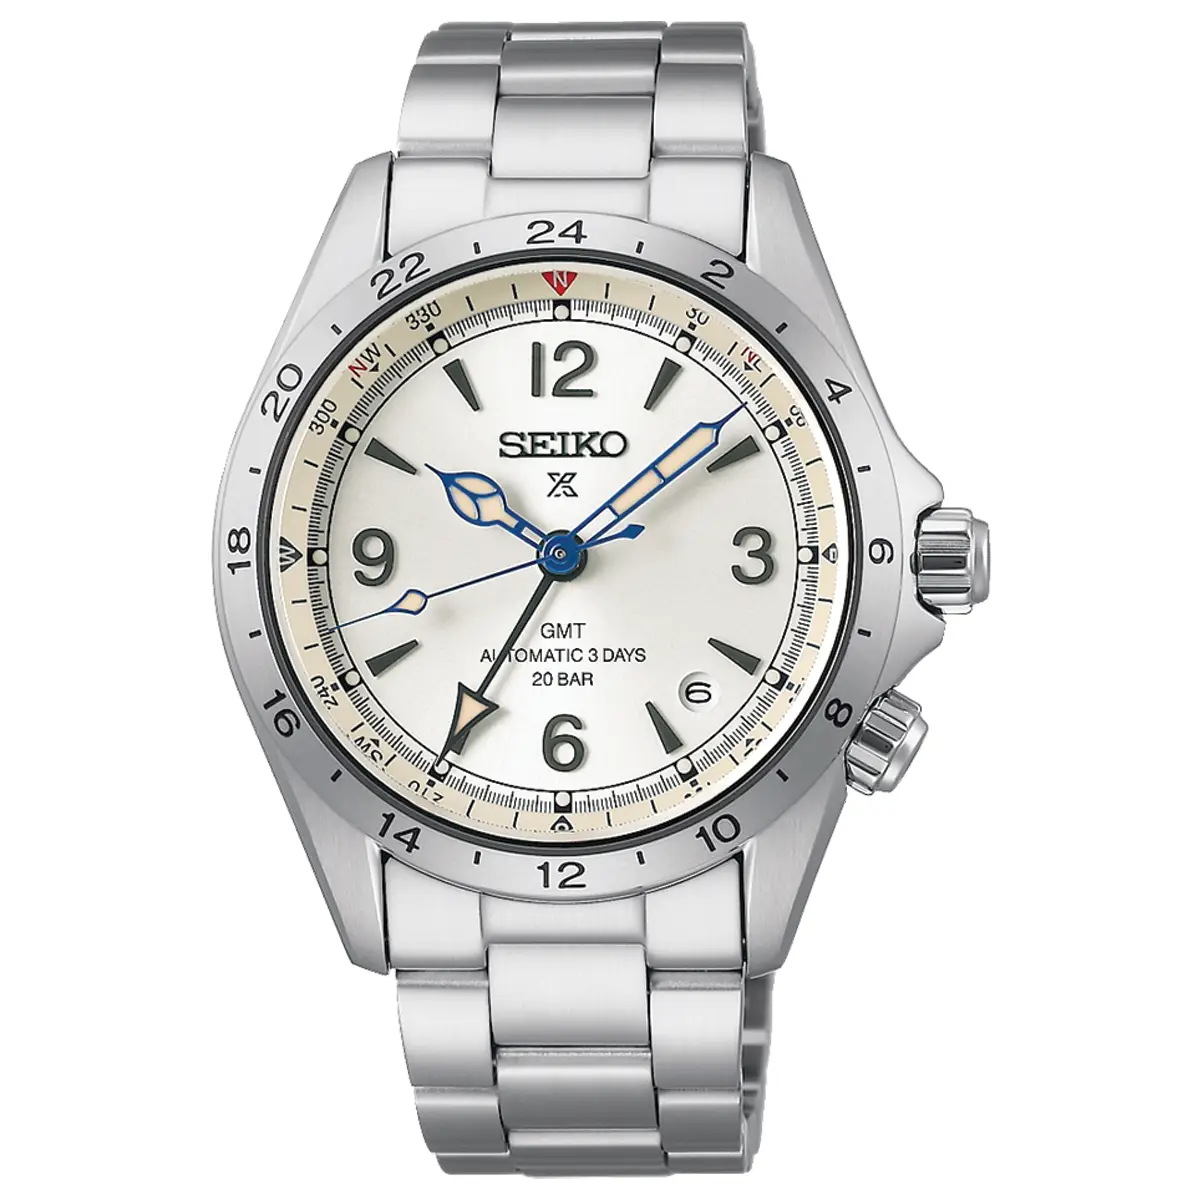 Đồng hồ Seiko Prospex Alpinist 110th Anniversary Mechanical GMT Limited Edition SBEJ017 mặt số màu bạc. Dây đeo bằng da và thép. Thân vỏ bằng thép.